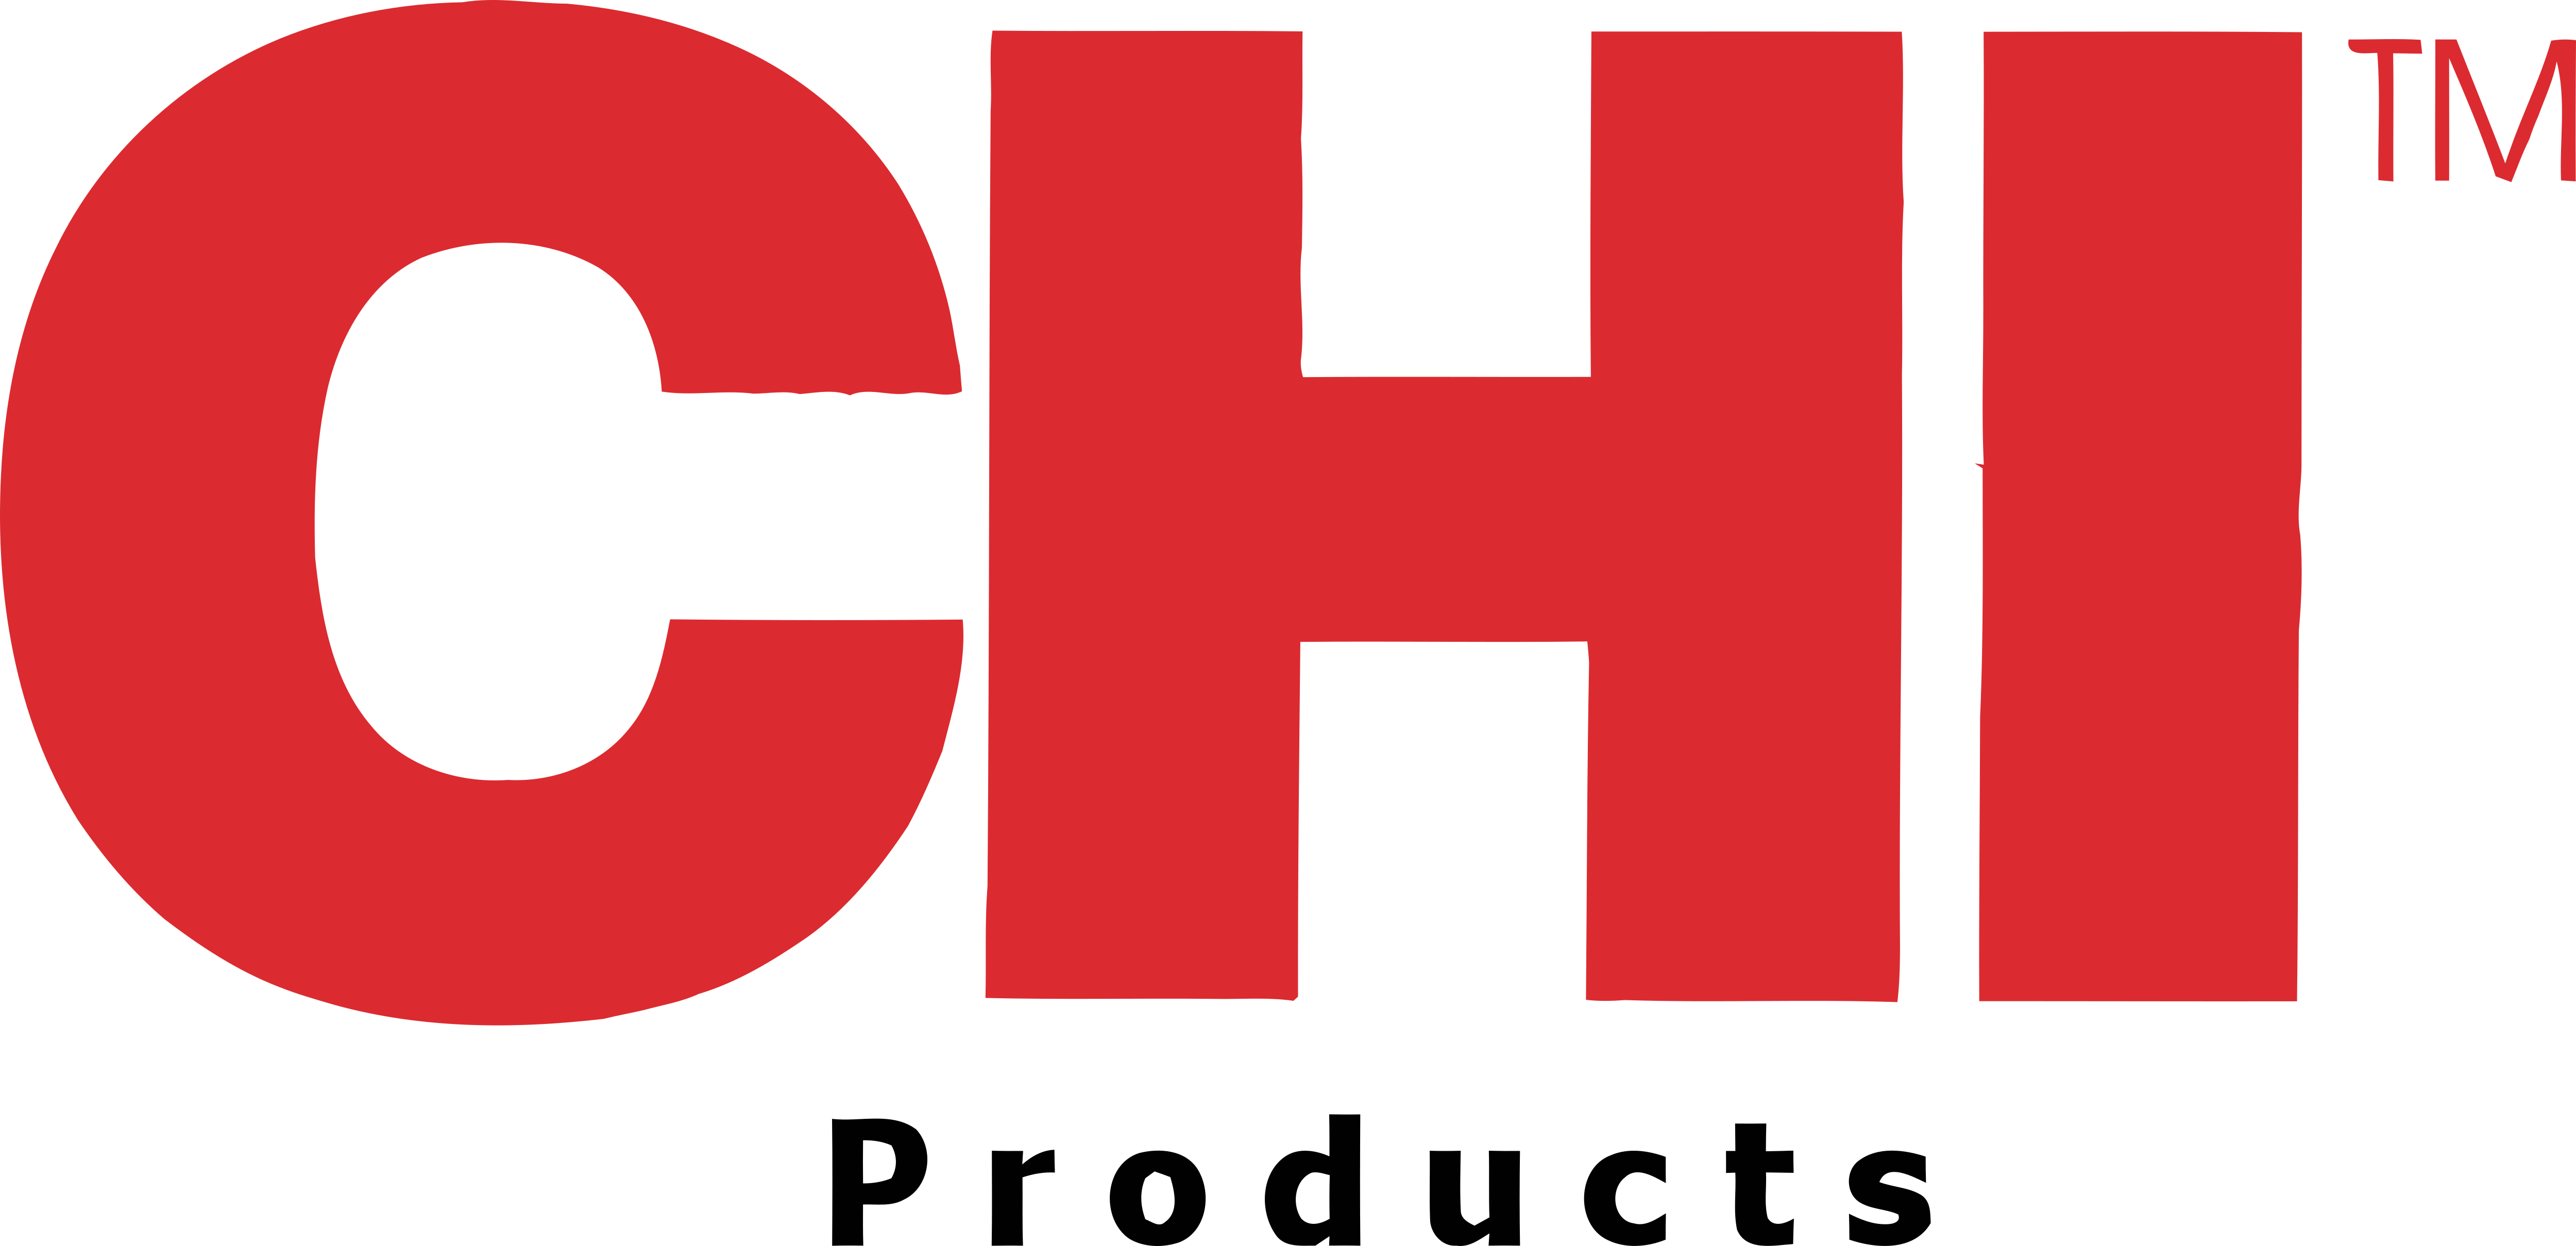 Chi Logo - CHI – Logos Download